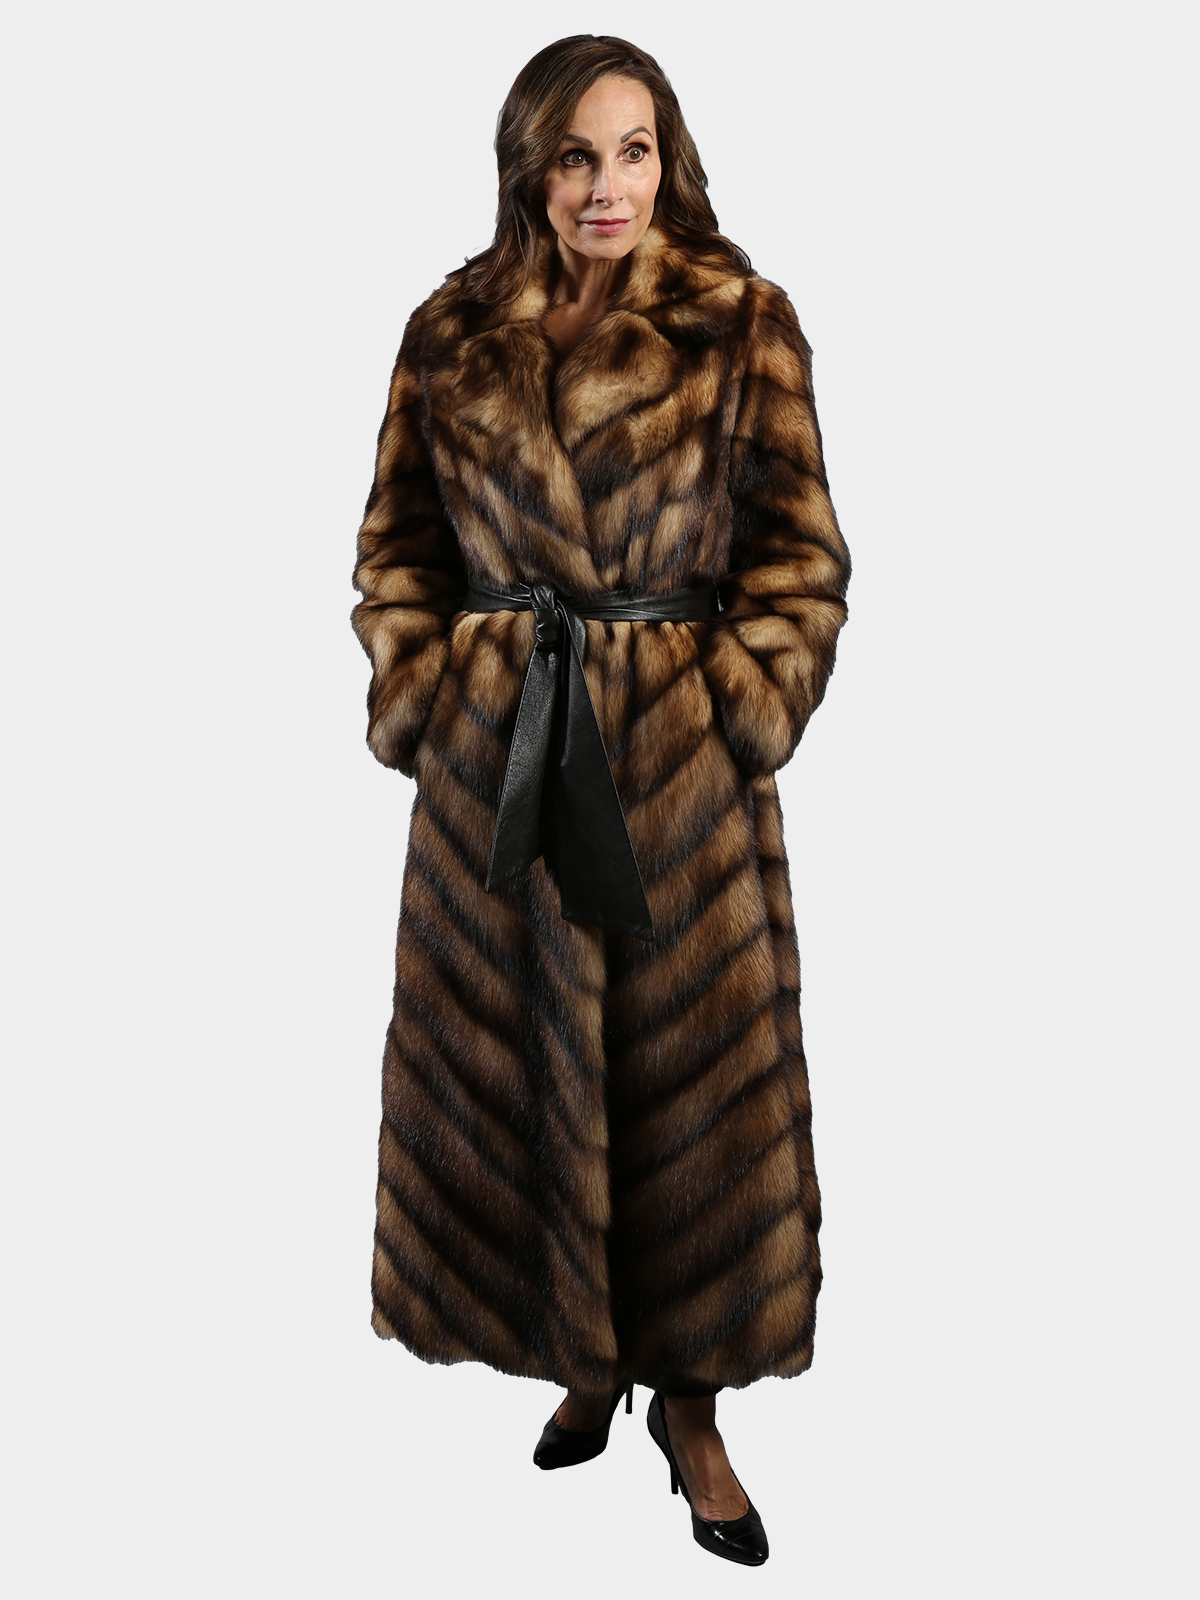 fitch fur coat  Fur fashion, Fur coat, Vintage fur